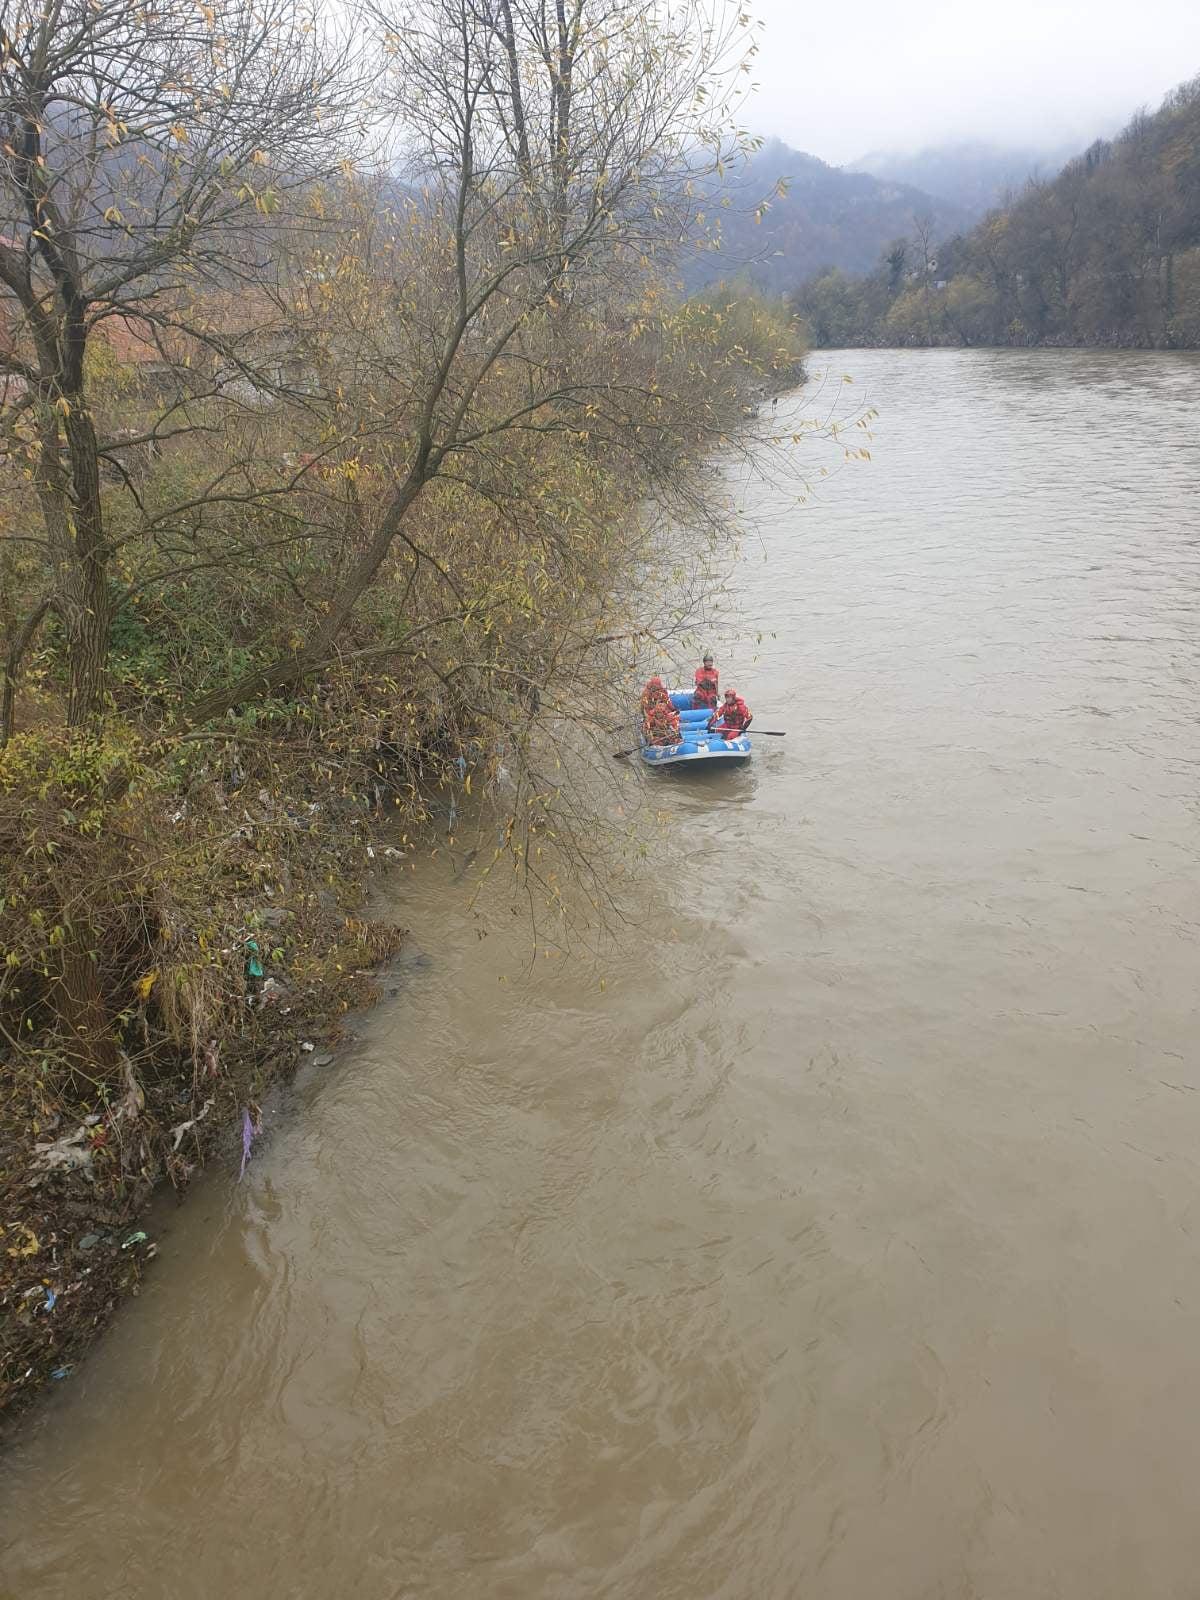 S današnje potrage: Češljanje desne obale korita rijeke Bosne - Avaz